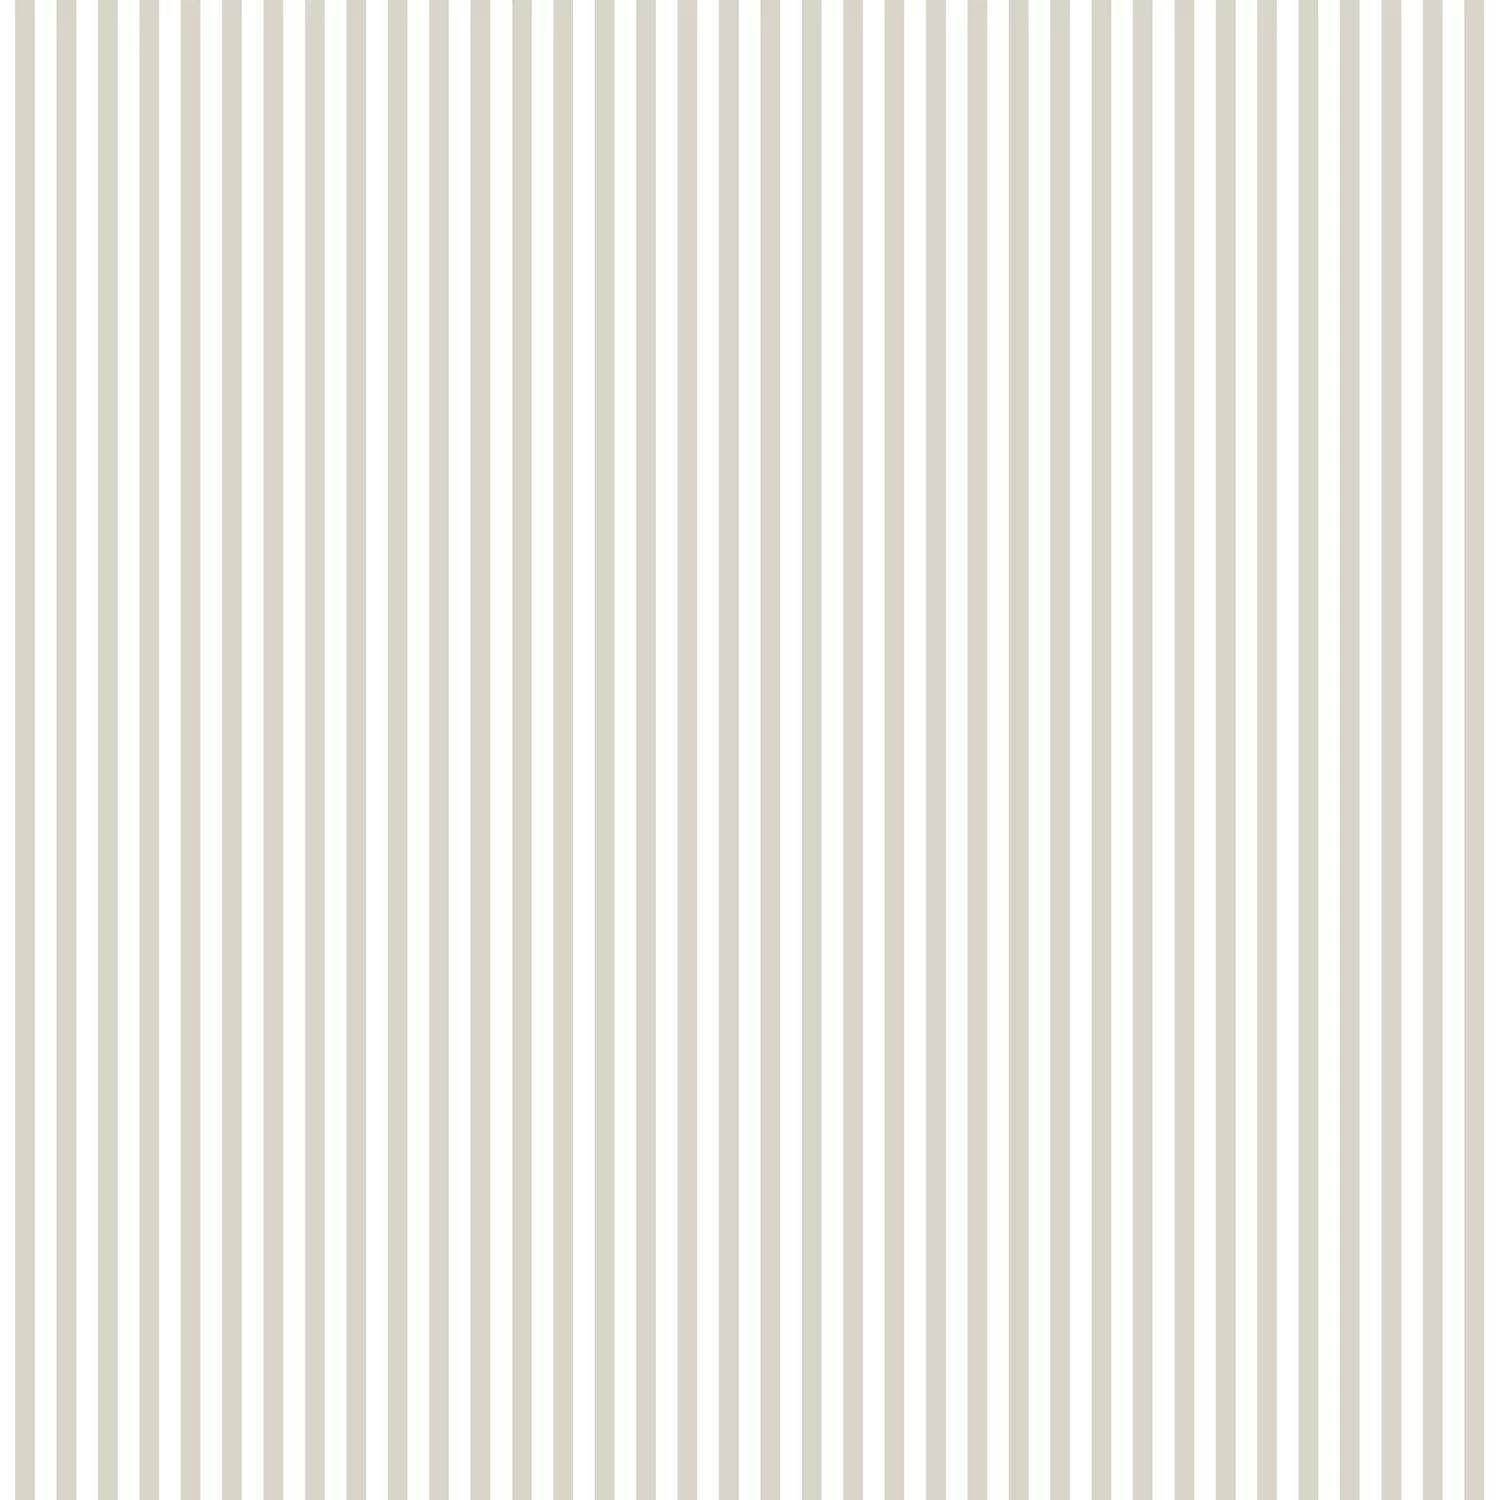 luckey-stripe-33_-l-x-20.5_-w-wallpaper-roll-66375.jpg